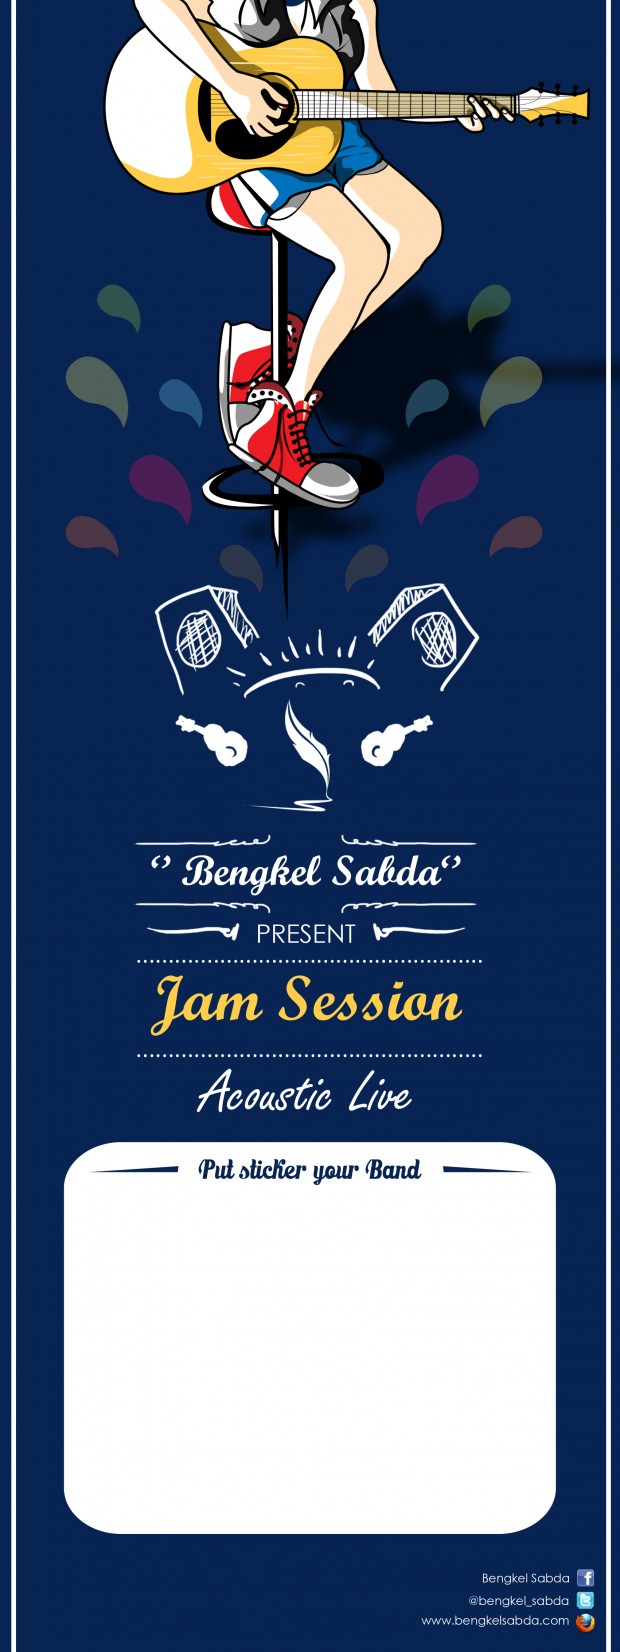 bengkel sabda jam session accoustic live 02